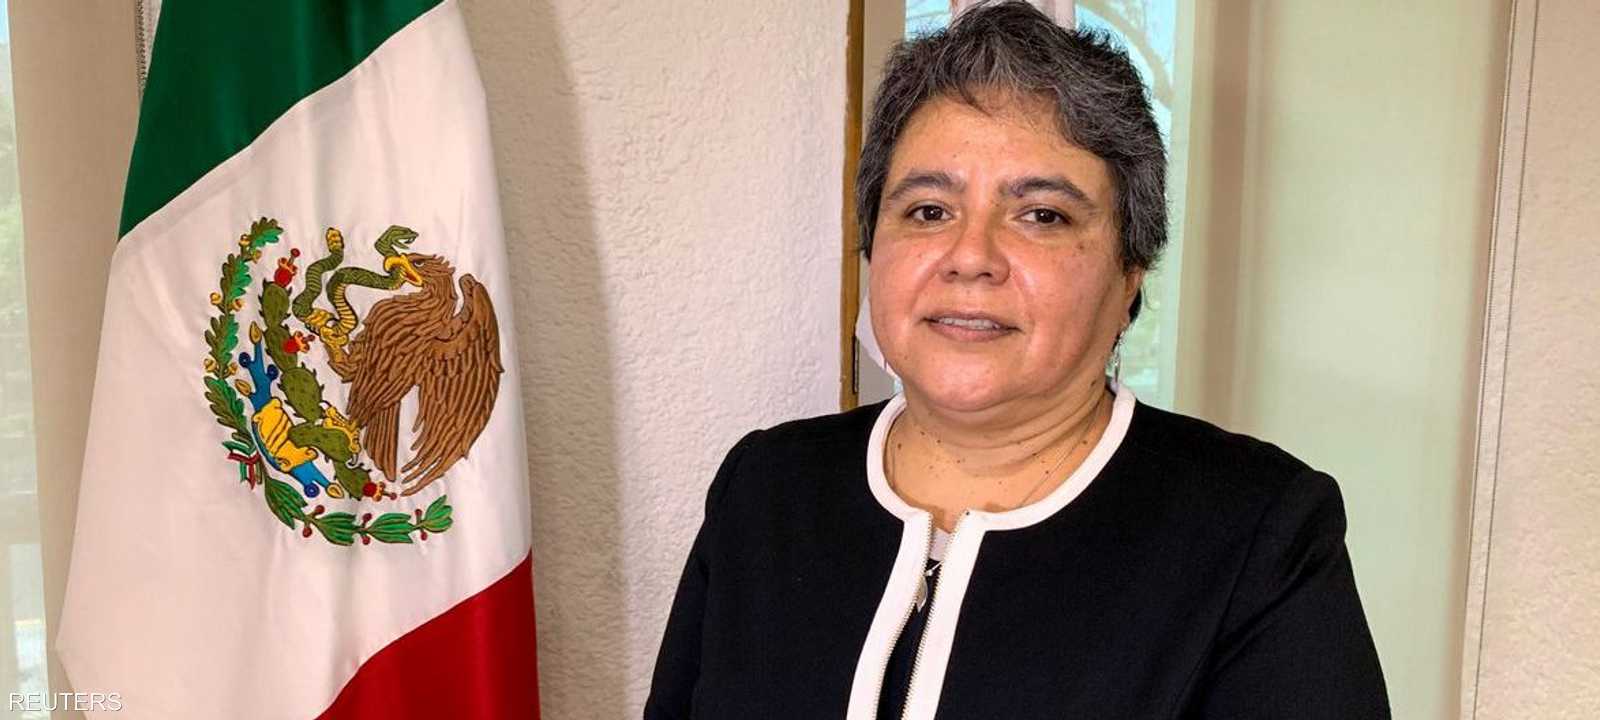 راكيل بوينروسترو وزيرة الاقتصاد الجديدة في المكسيك